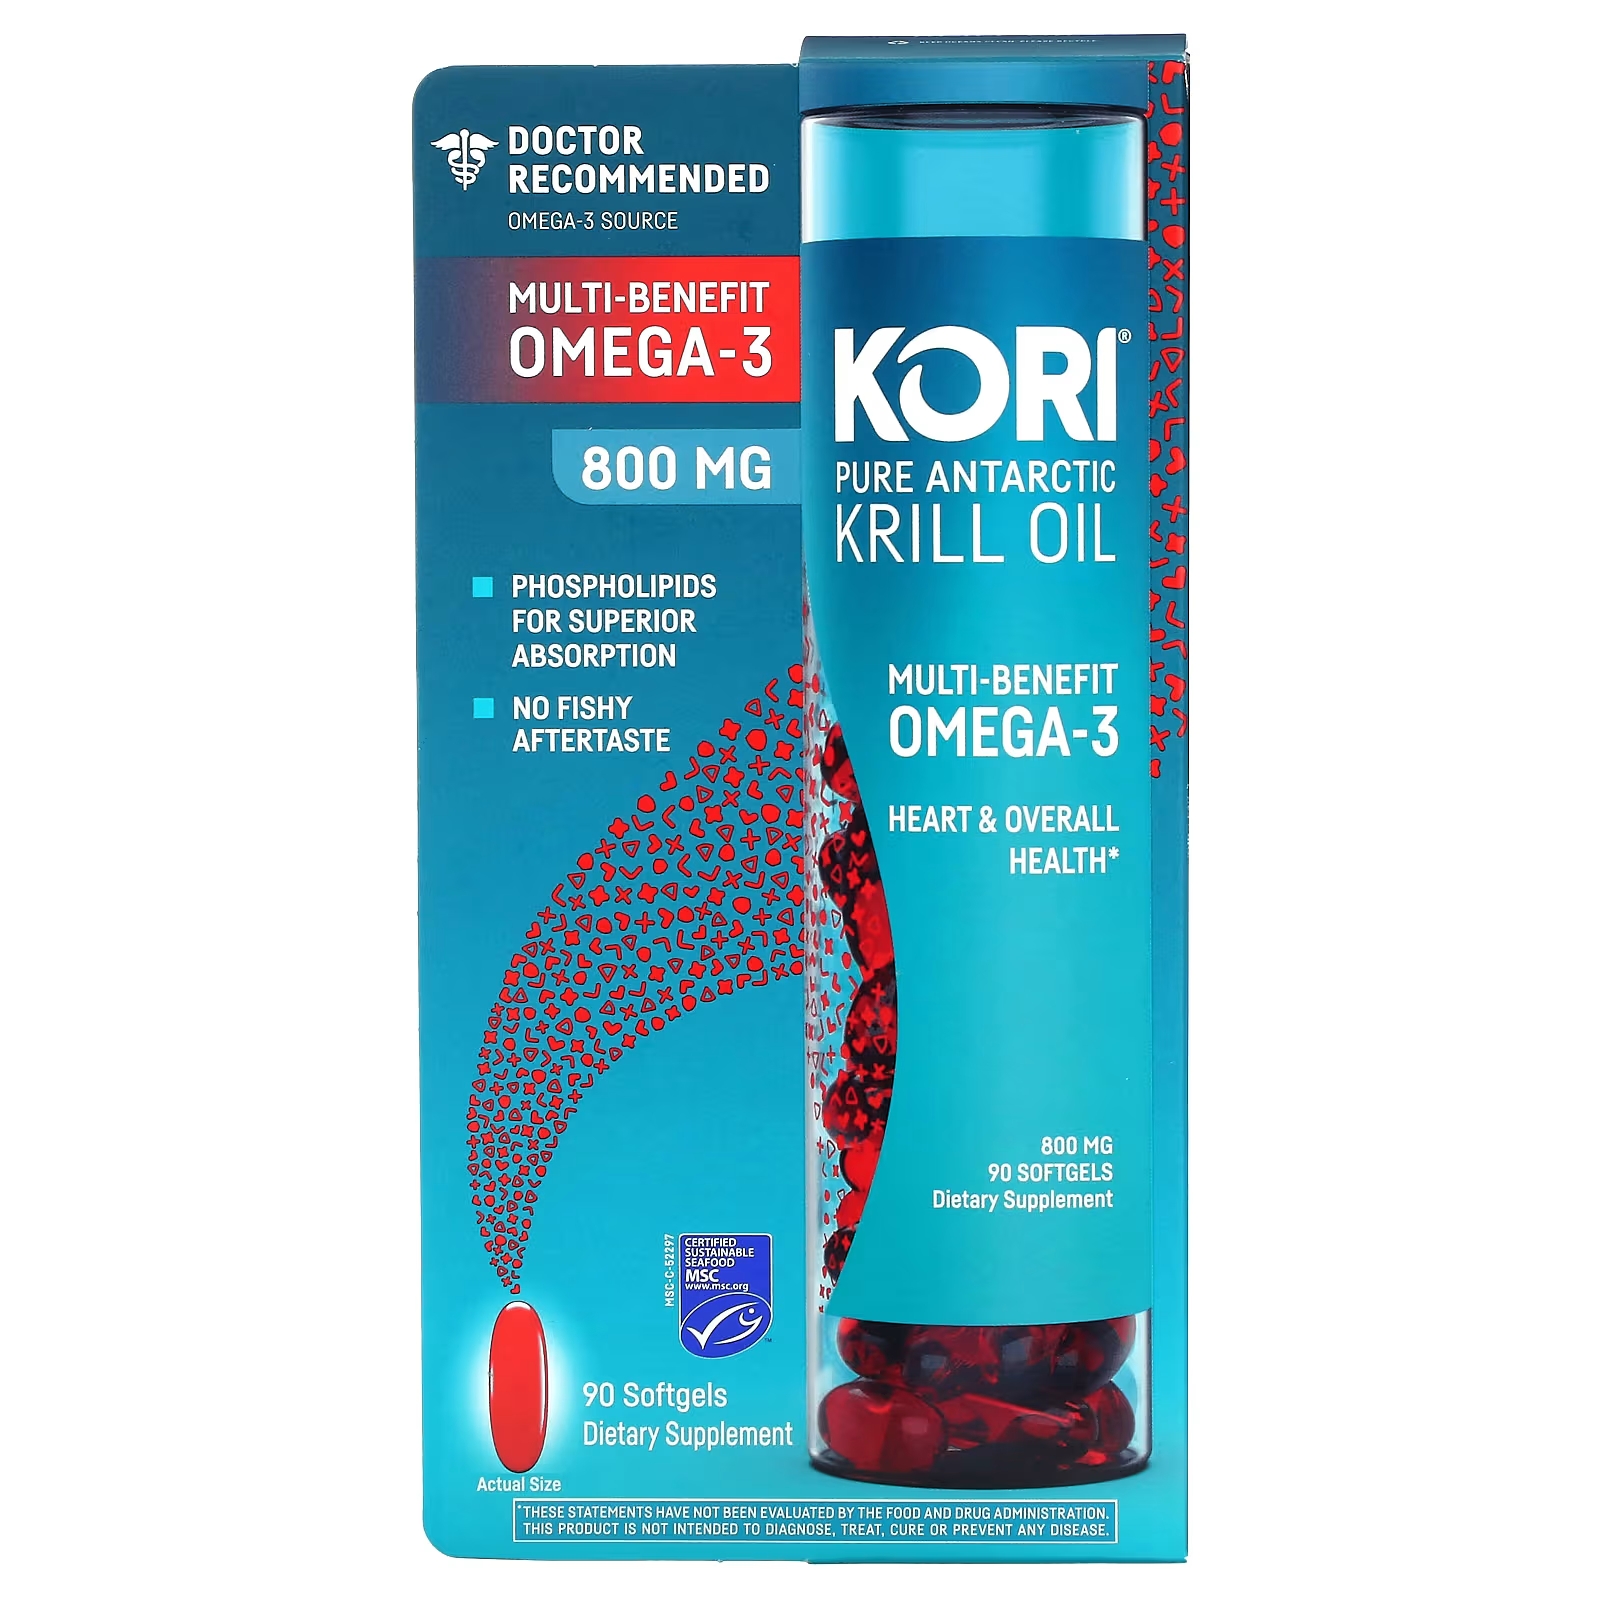 Kori Pure Масло антарктического криля с многофункциональными преимуществами Омега-3, 800 мг, 90 мягких таблеток цена и фото